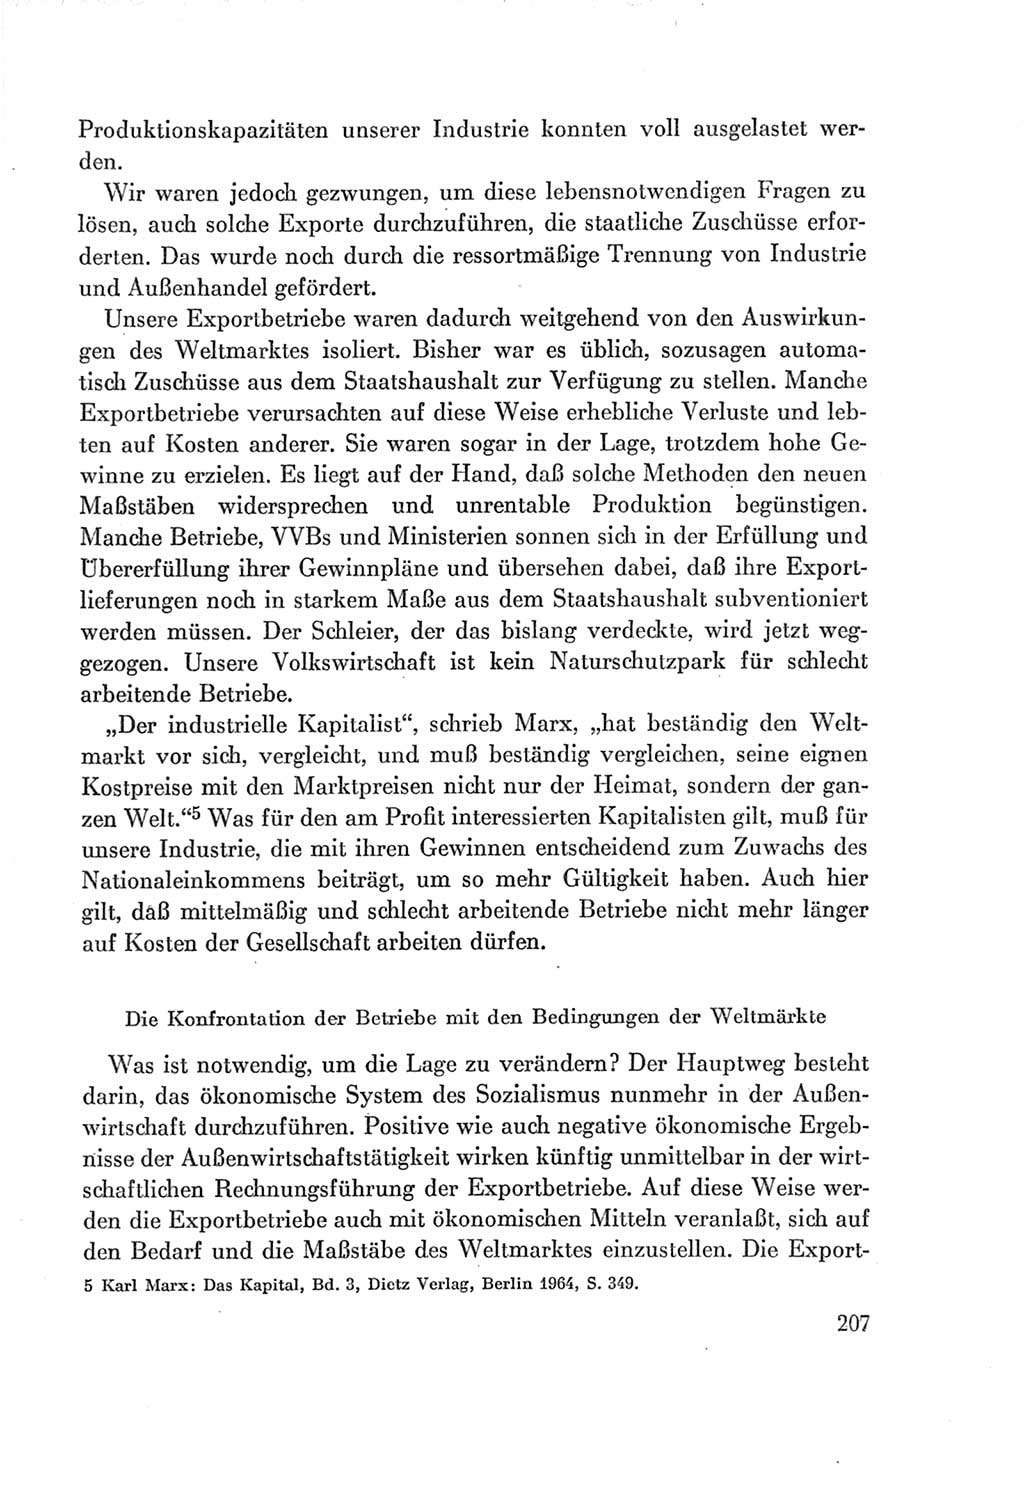 Protokoll der Verhandlungen des Ⅶ. Parteitages der Sozialistischen Einheitspartei Deutschlands (SED) [Deutsche Demokratische Republik (DDR)] 1967, Band Ⅰ, Seite 207 (Prot. Verh. Ⅶ. PT SED DDR 1967, Bd. Ⅰ, S. 207)